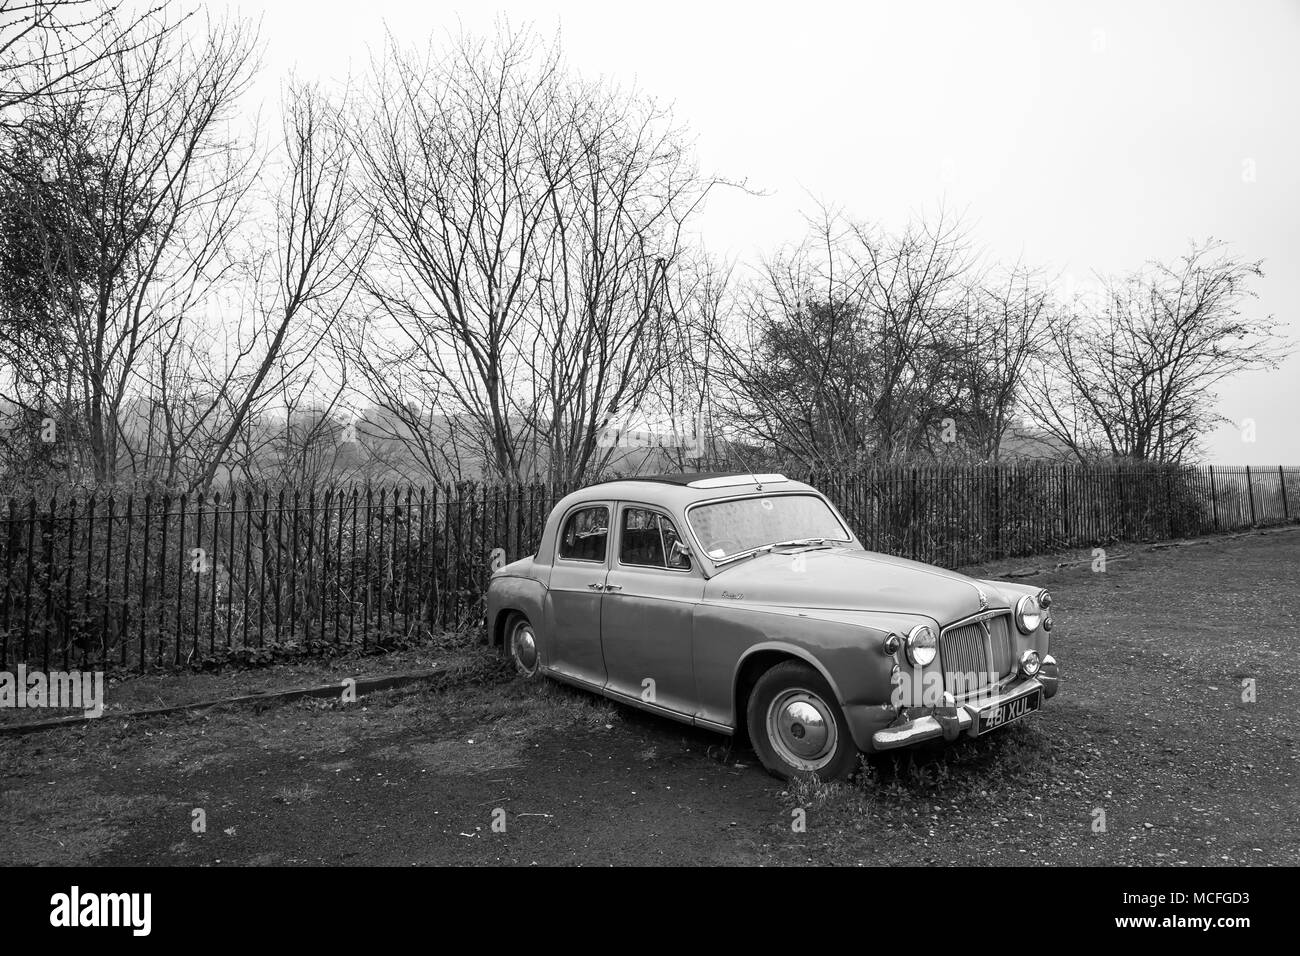 Monoplace, voiture isolée Rover P90, relique abandonnée, garée dans un parking britannique déserté. Banque D'Images